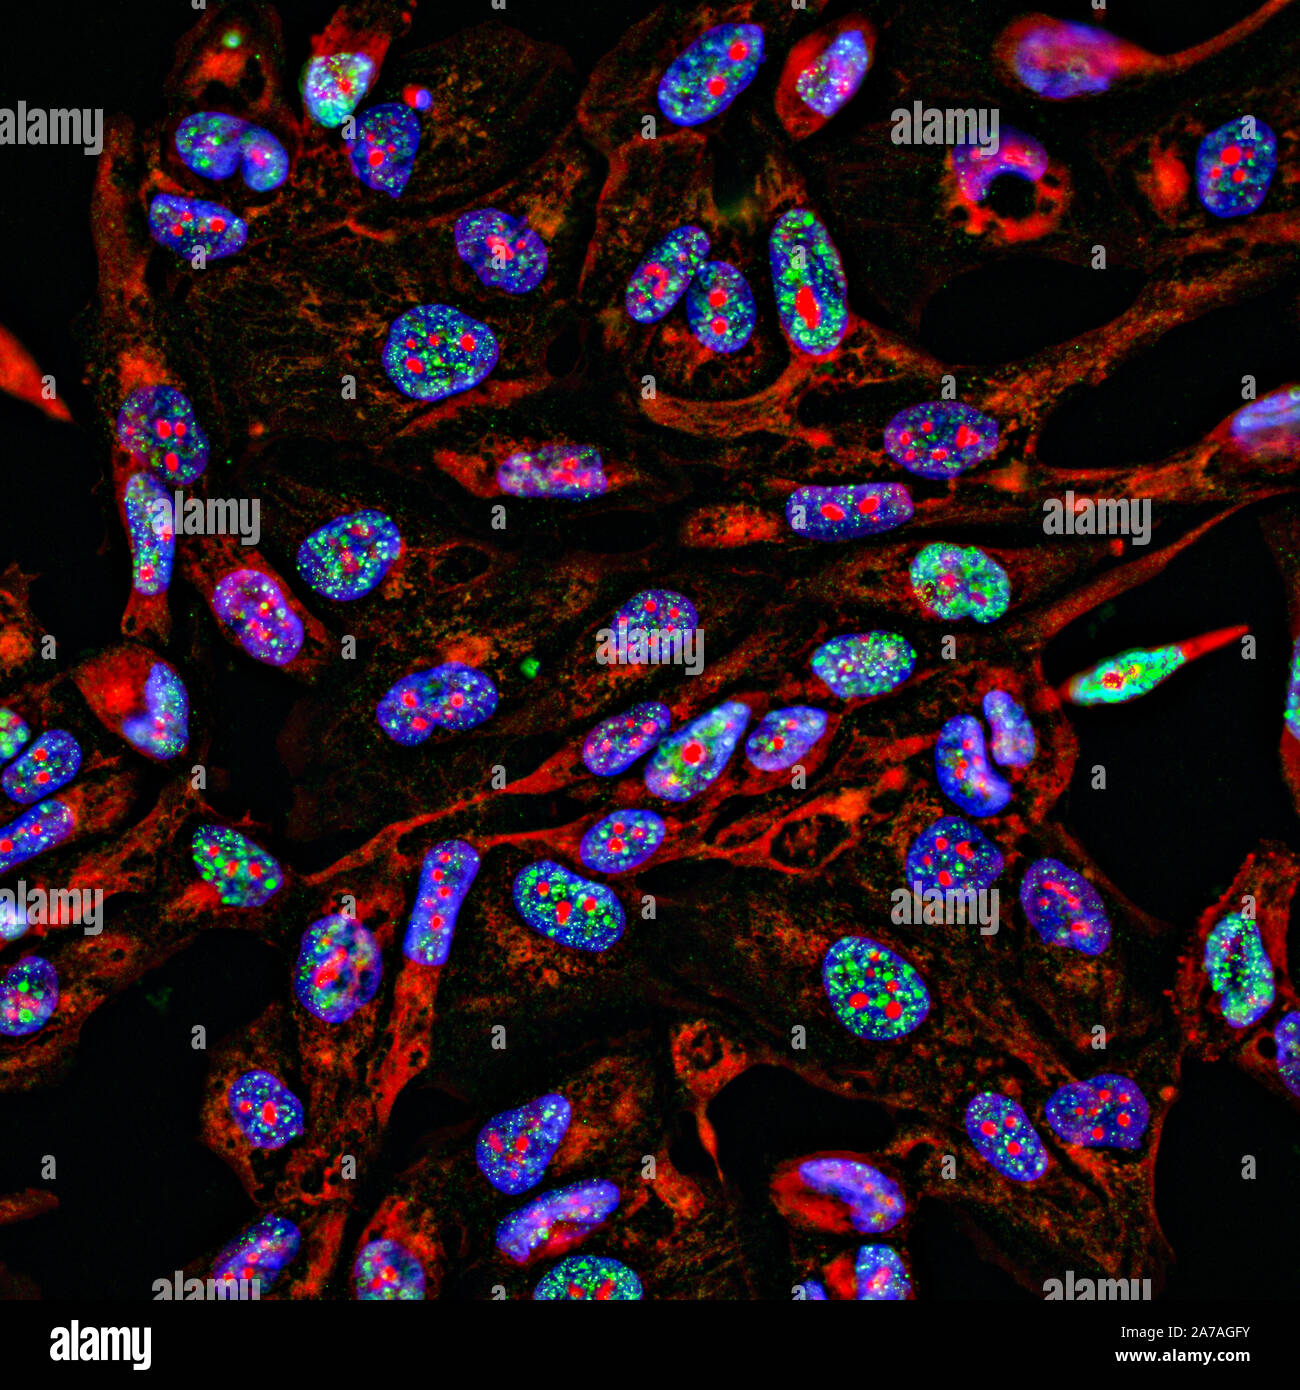 Imágenes fluorescentes inmunofluorescencia de células cancerosas que estén creciendo en 2D con núcleos, citoplasma azul en rojo y el daño al ADN focos en verde Foto de stock